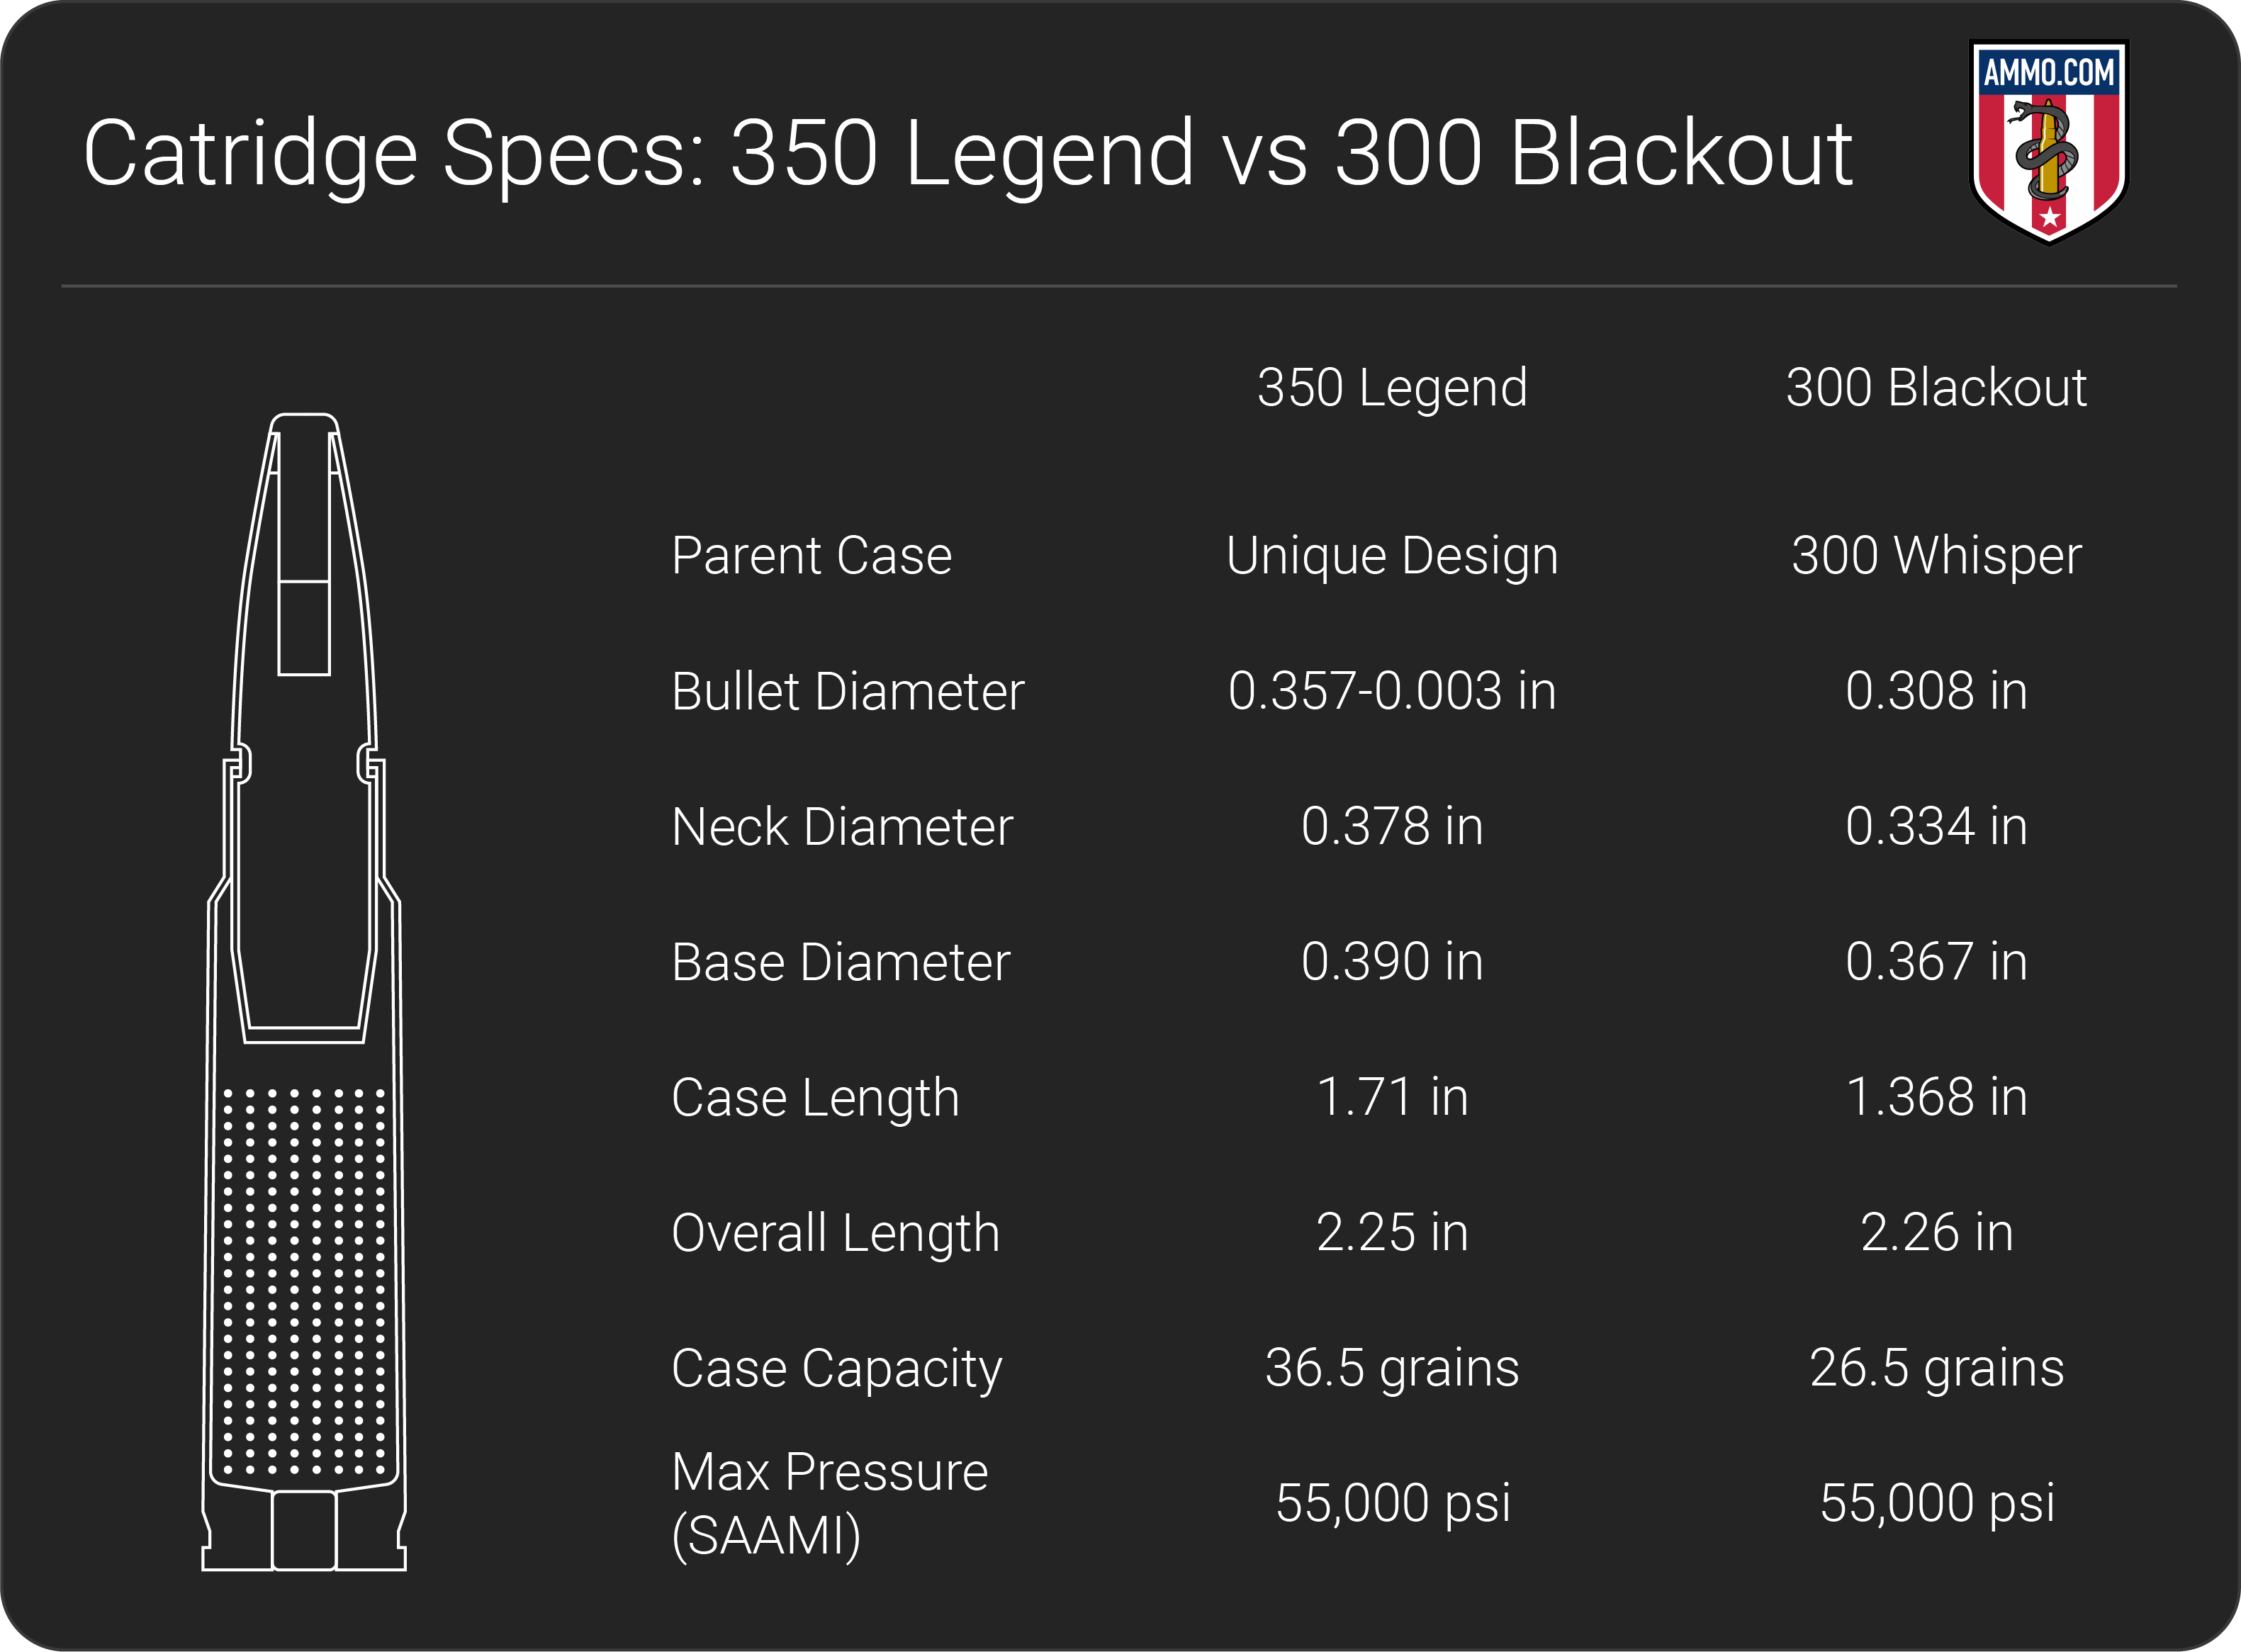 350 Legend vs 300 Blackout dimension chart